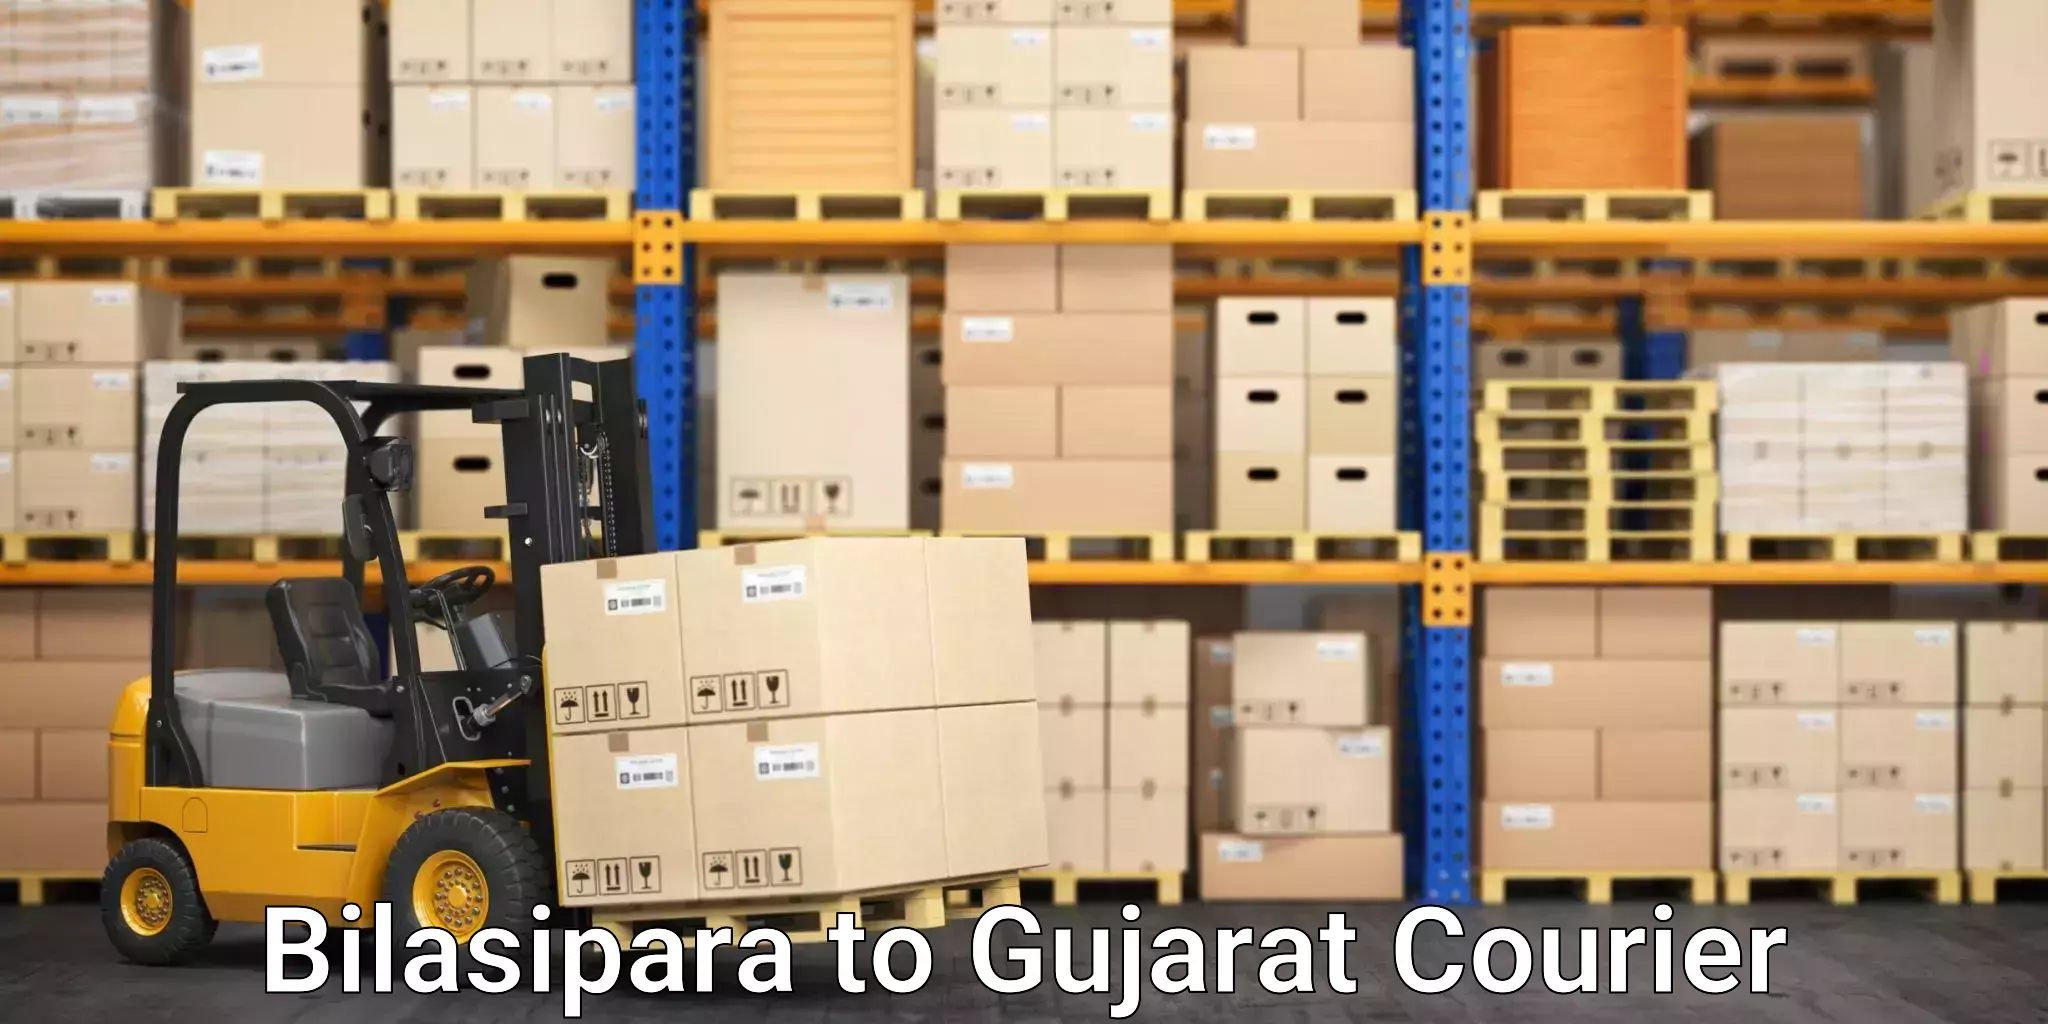 24/7 shipping services Bilasipara to Gujarat